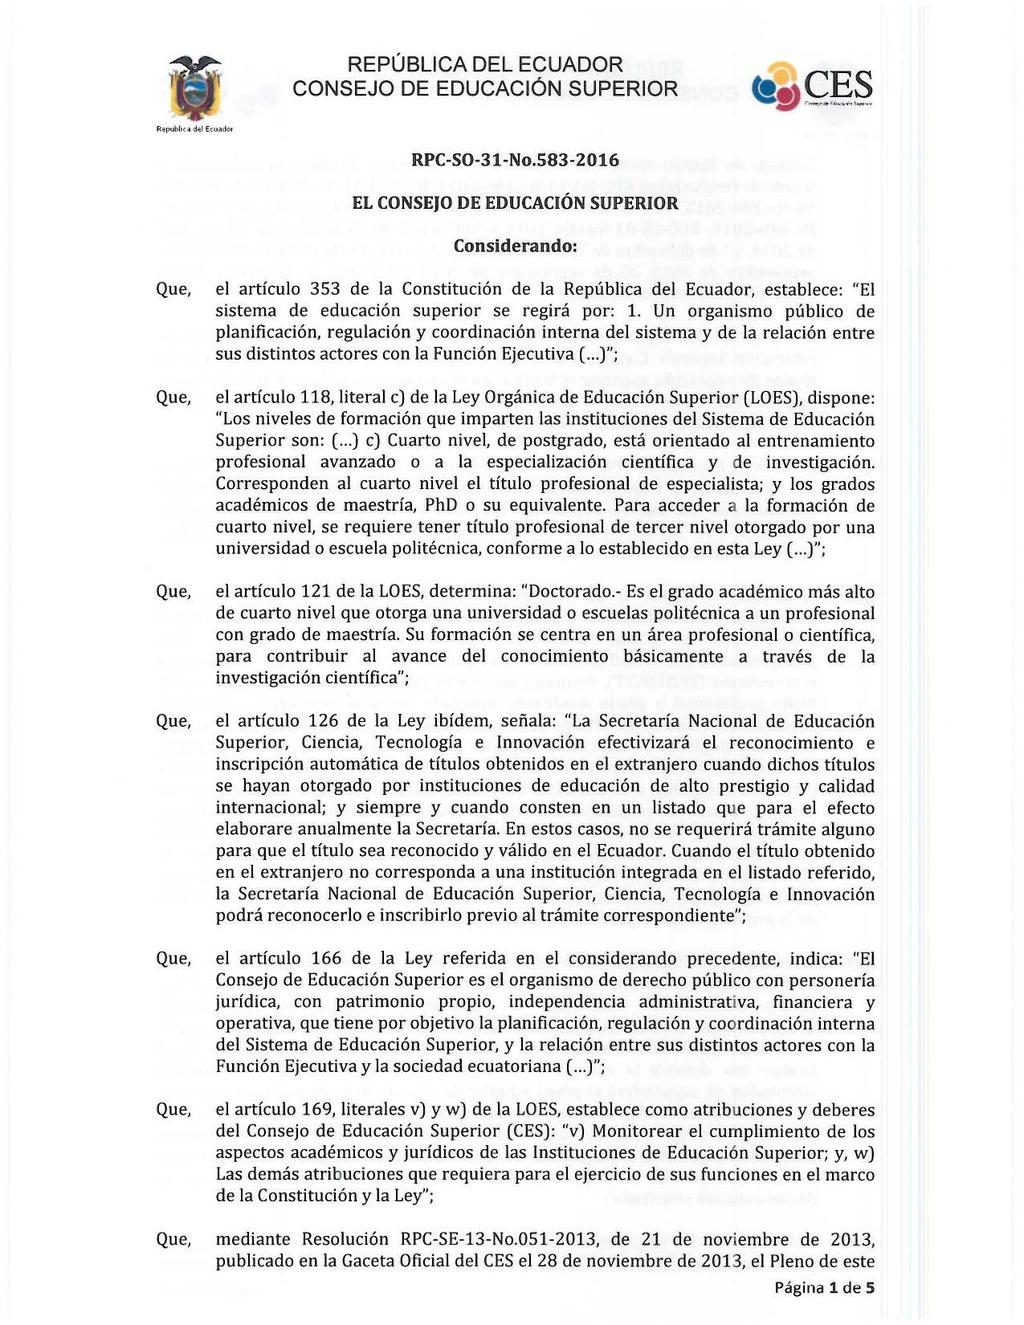 REPÚBLICA DEL ECUADOR RPC-SO-31-No_583-2016 EL CONSEJO DE EDUCACIÓN SUPERIOR Considerando: el articulo 353 de la Constitución de la República del Ecuador, establece: "El sistema de educación superior